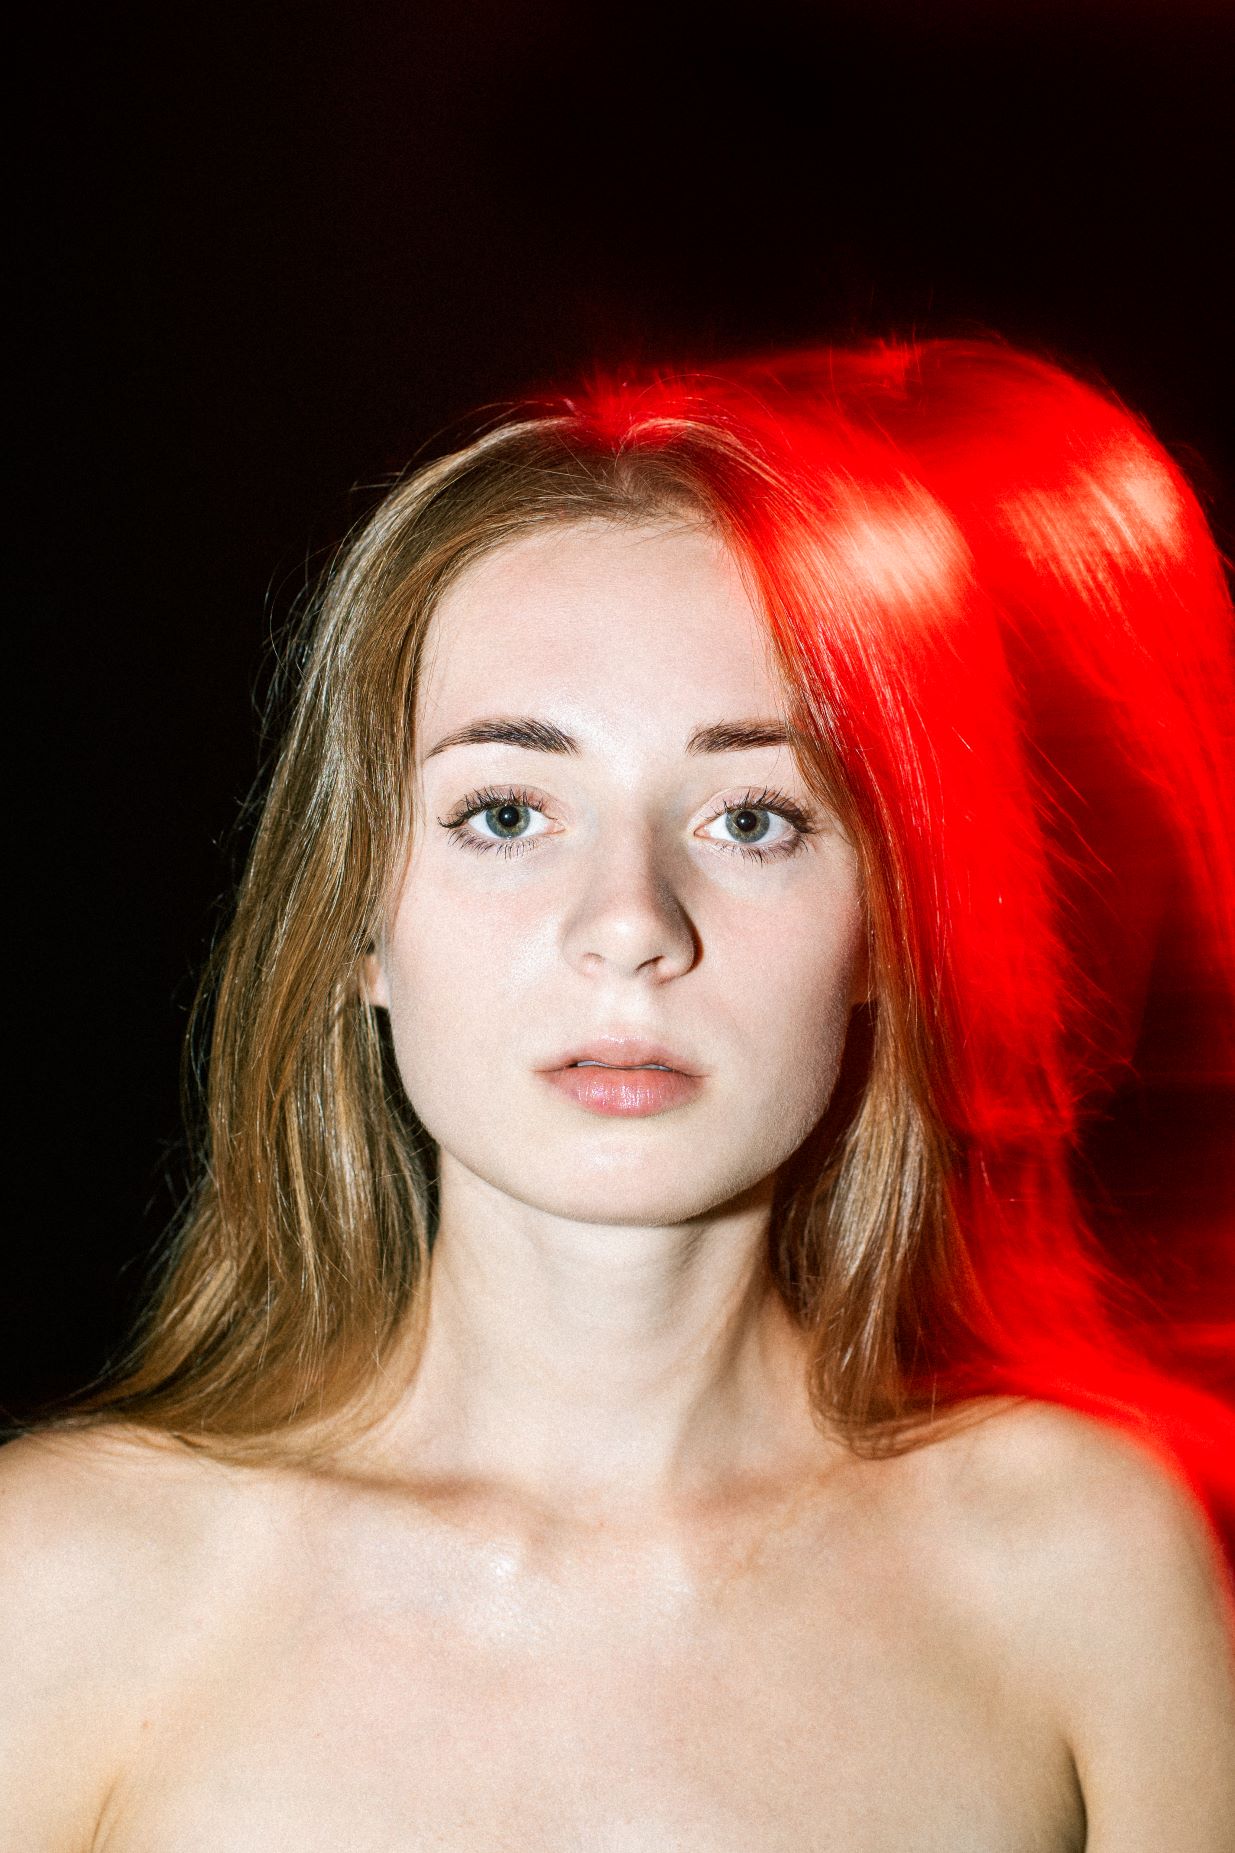 Portret młodej długowłosej blondynki z niebieskimi oczami. Światło padające z tyłu na głowę i nagie ramiona kobiety wyraźnie kontrastuje z czarnym tłem i tworzy intensywną czerwoną poświatę.